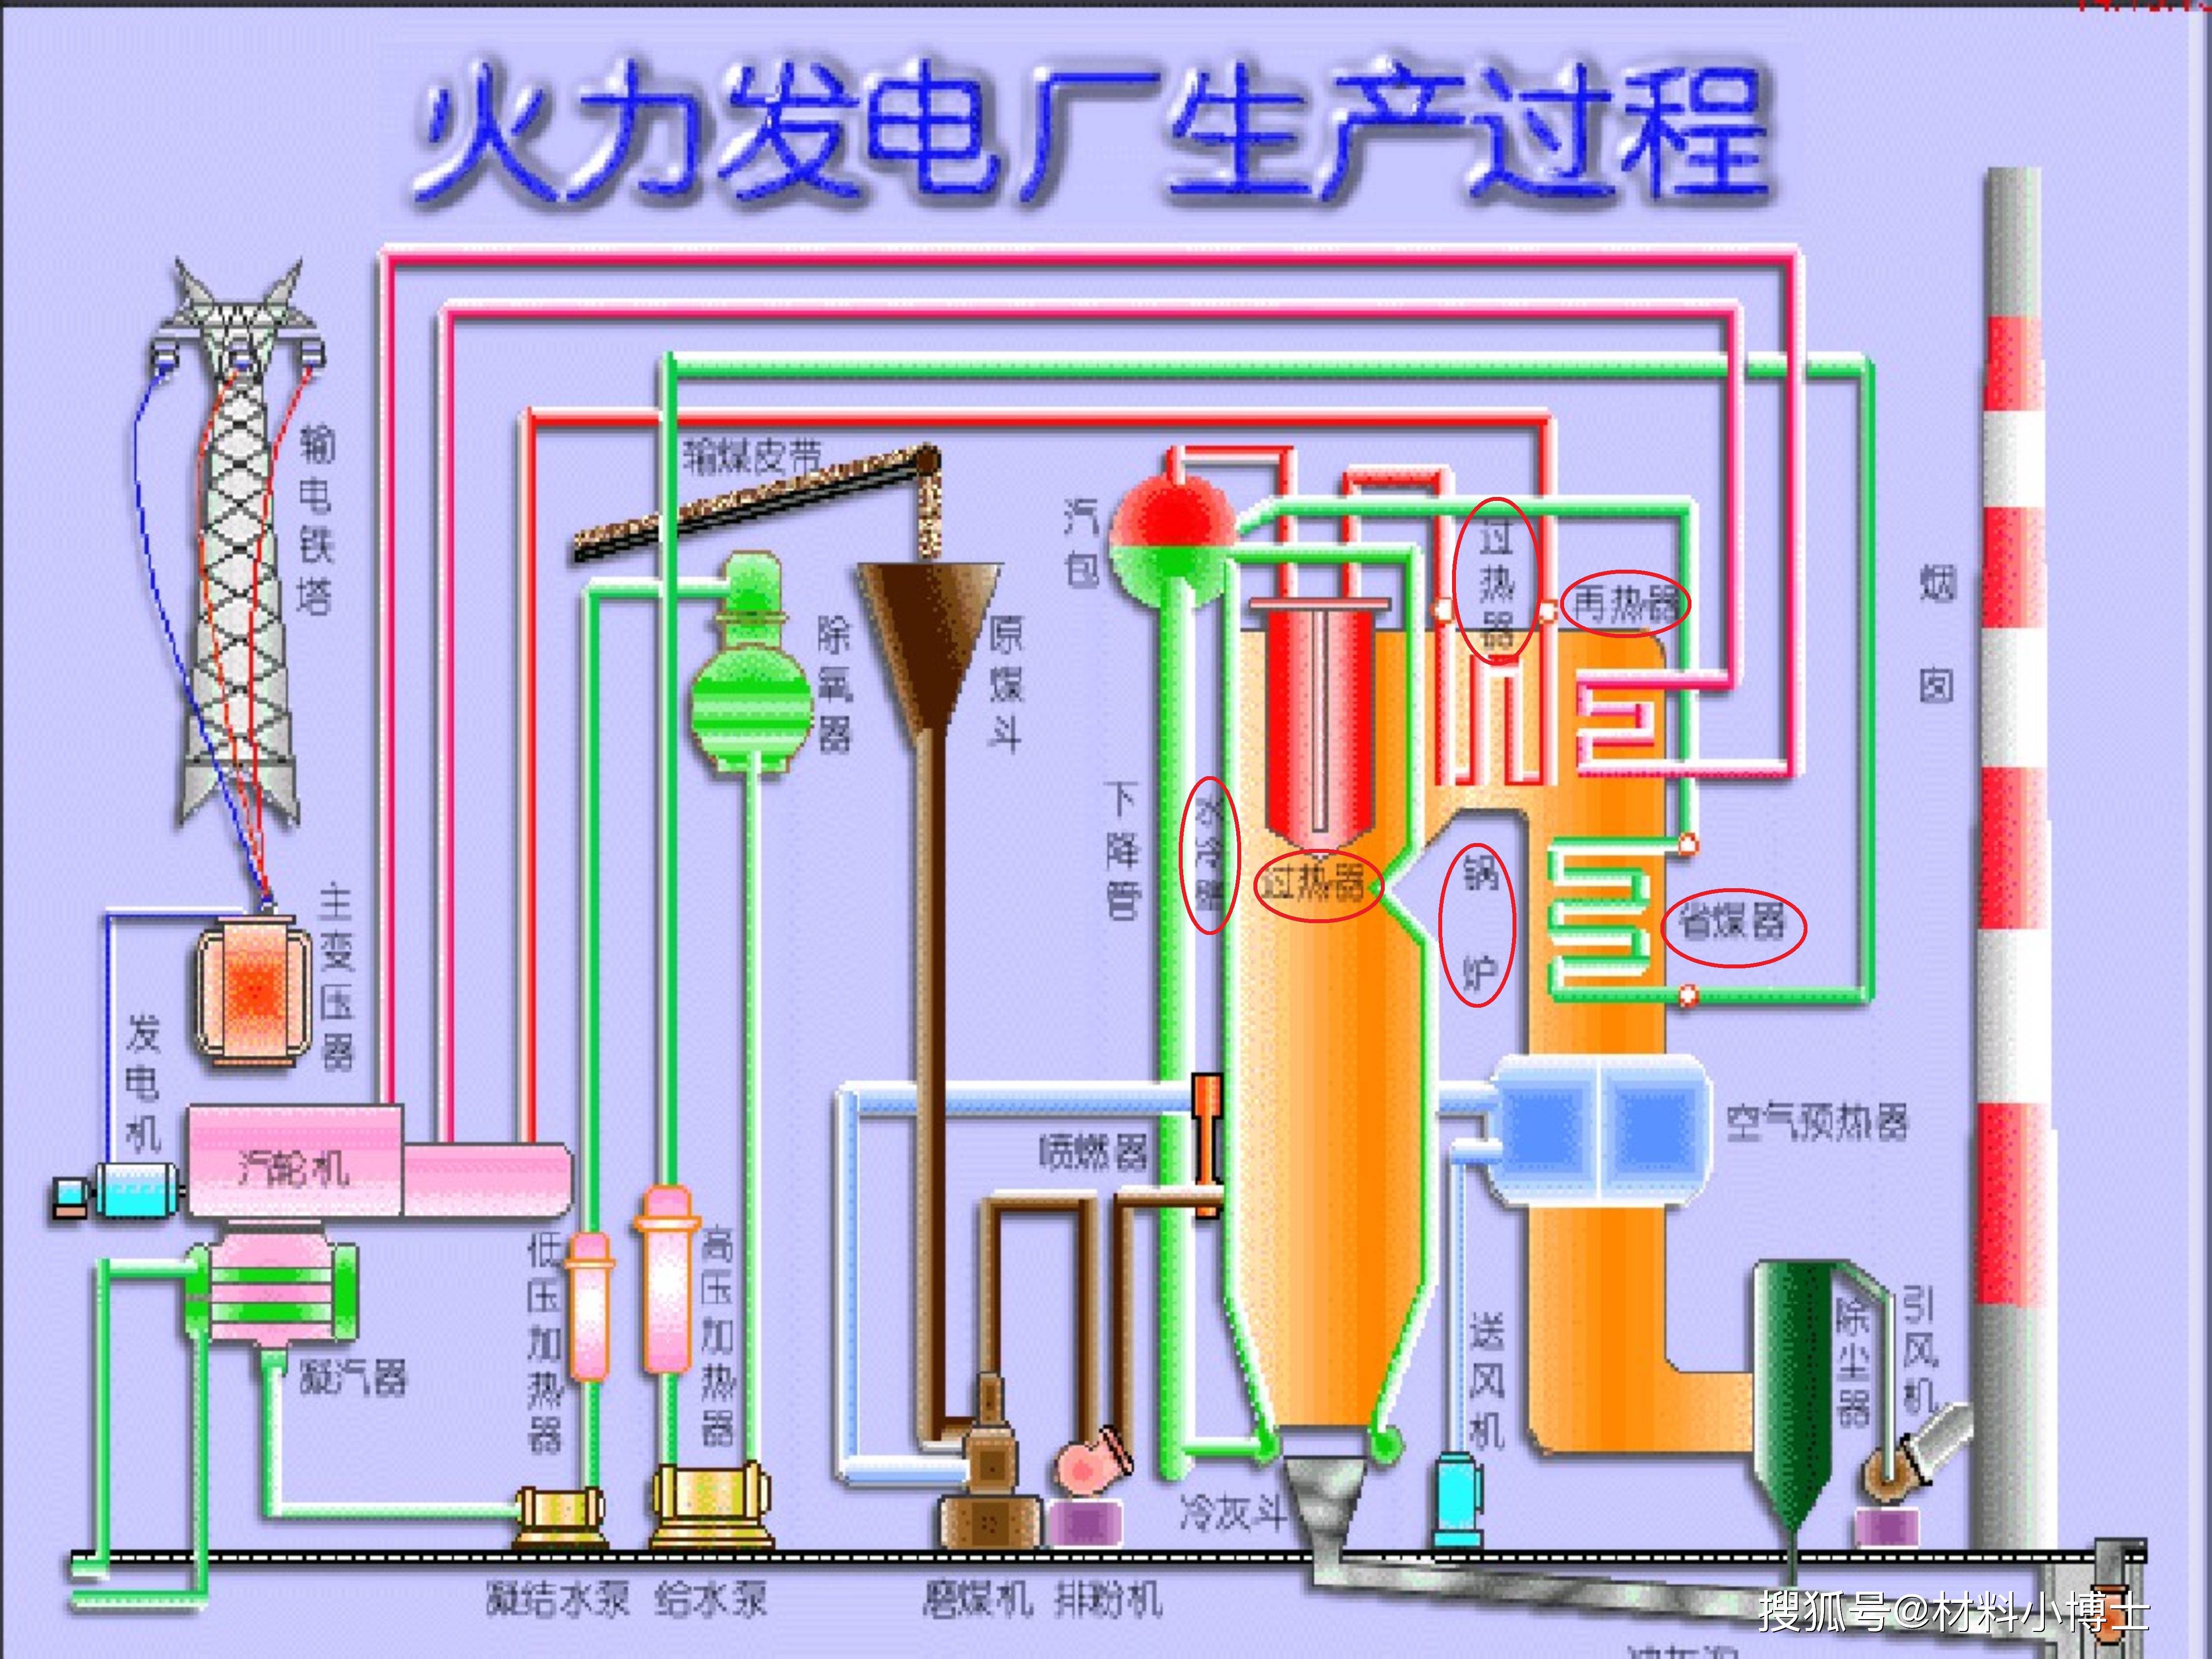 火力发电厂的三大主要设备是锅炉,汽轮机和发电机,发电离不开锅炉,而